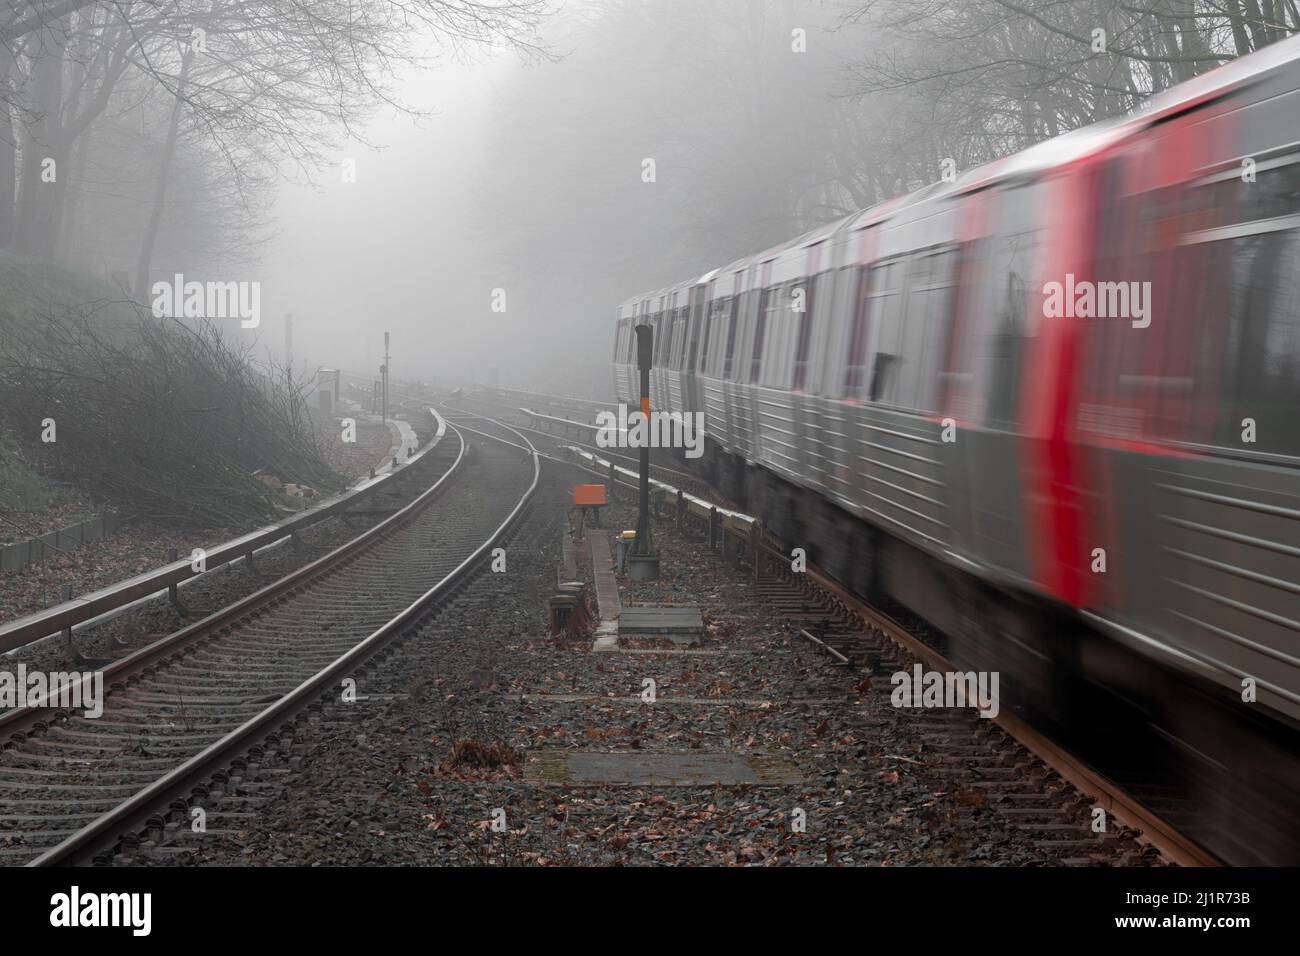 Subway traveling trough fog Stock Photo